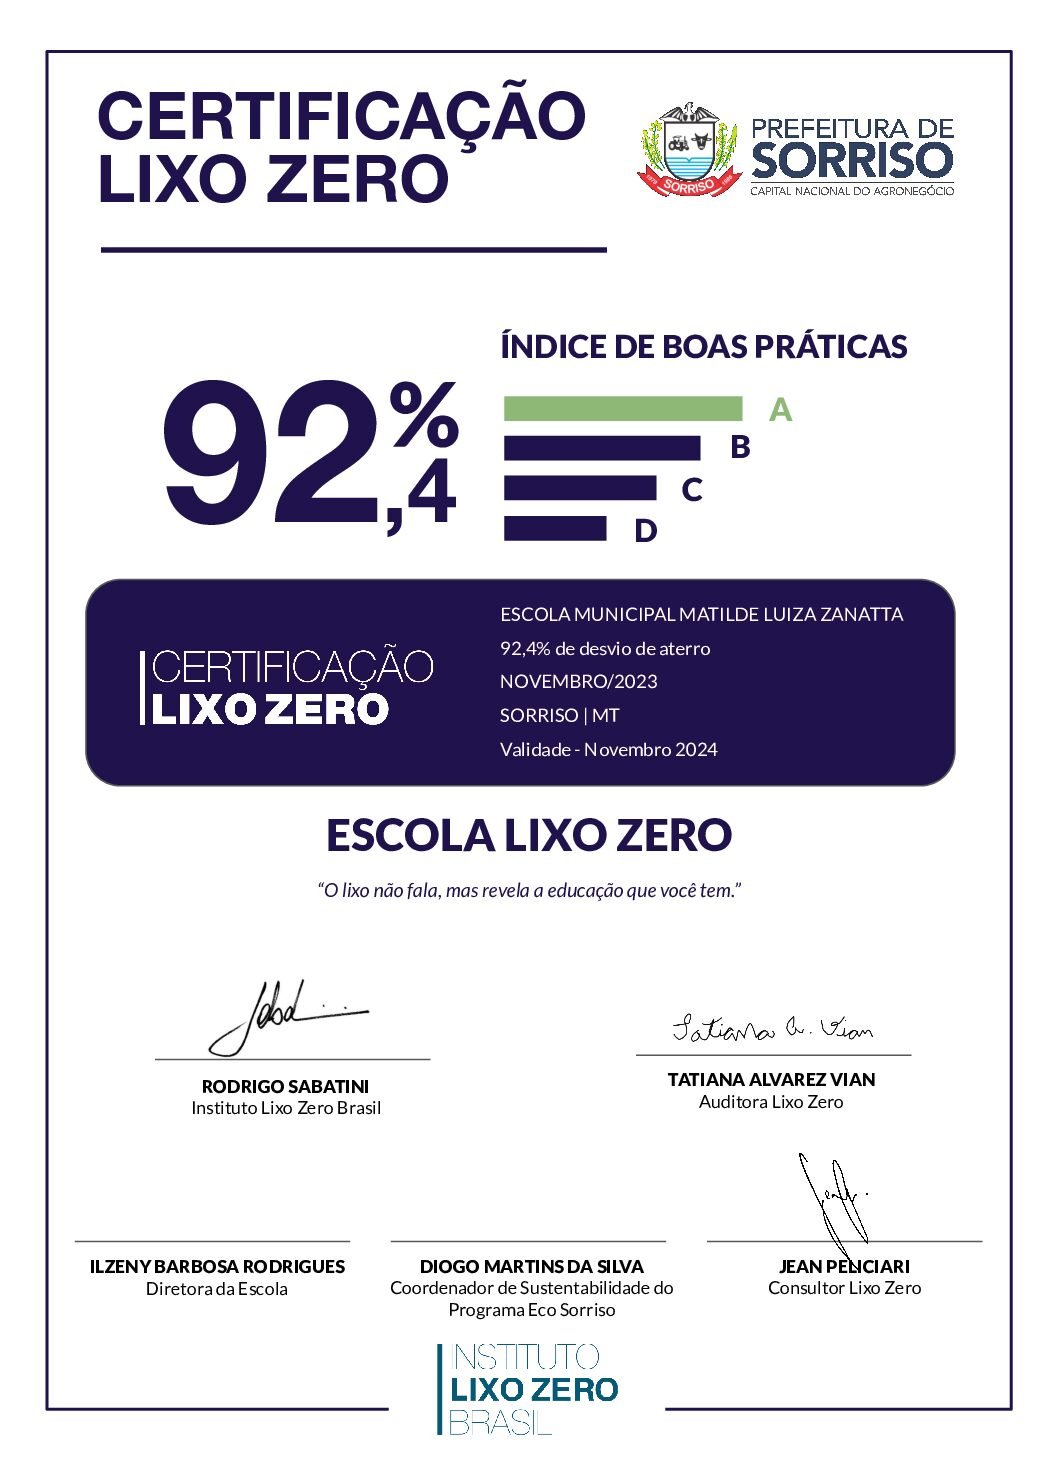 CertificaçãoLixoZero_ESCOLA MUNICIPAL MATILDE LUIZA ZANATTA GOMES_Sorriso_MT_Novembro_2023